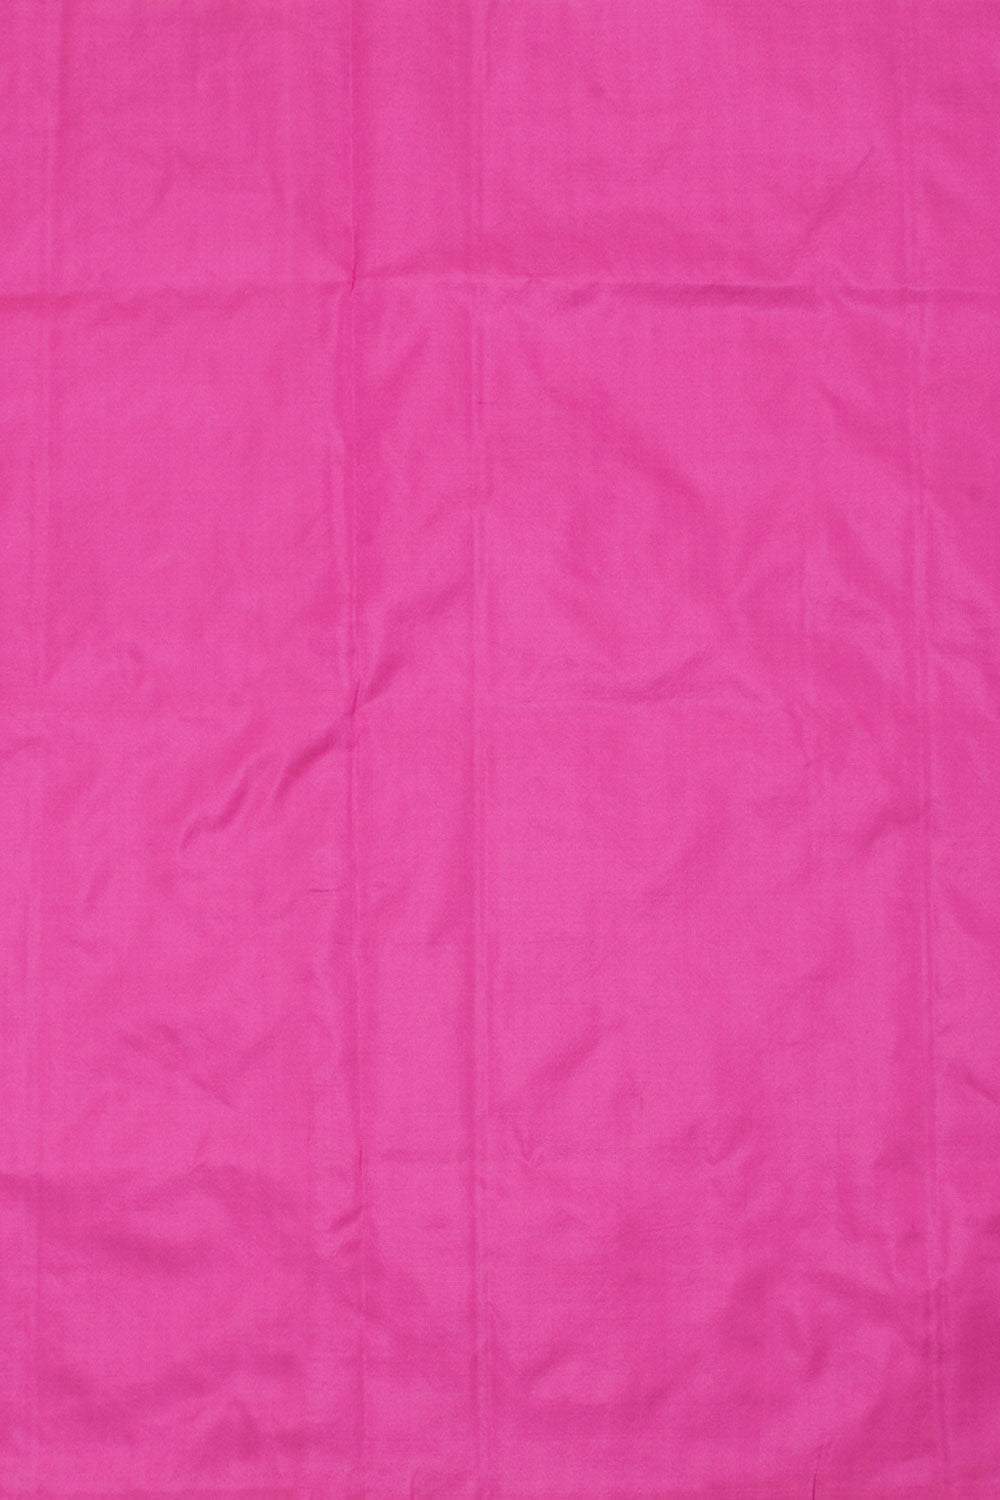 Handloom Kanchipuram Silk Blouse Material 10058184